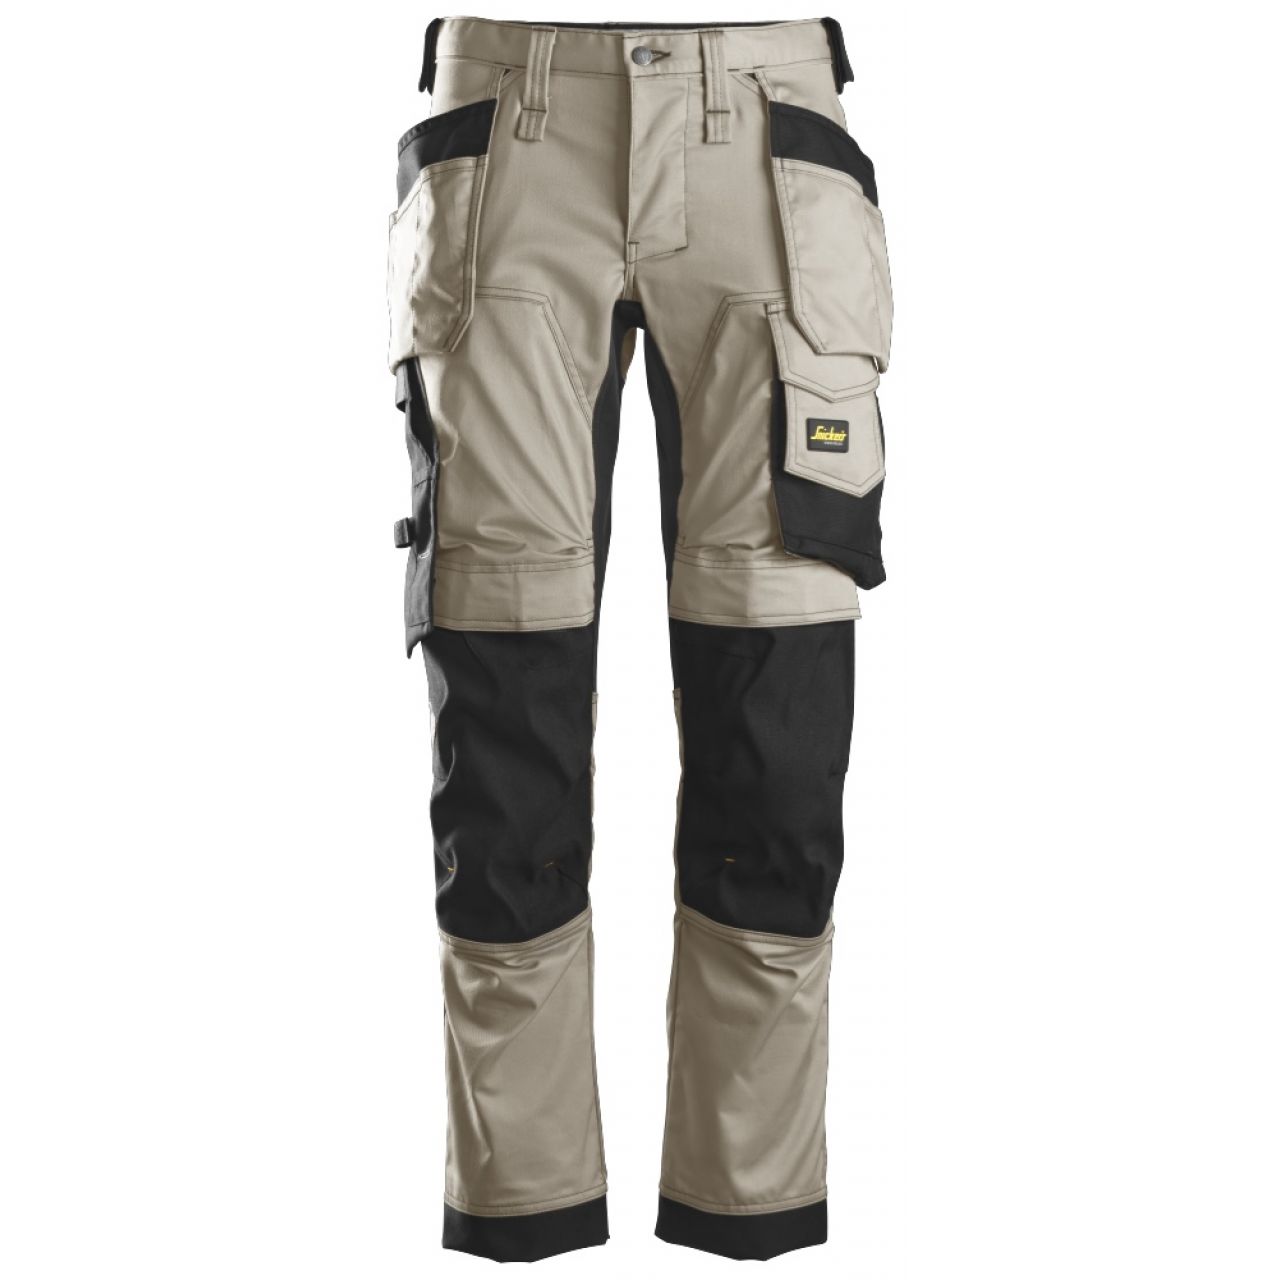 6241 Pantalones largos de trabajo elásticos con bolsillos flotantes AllroundWork beige-negro talla 48